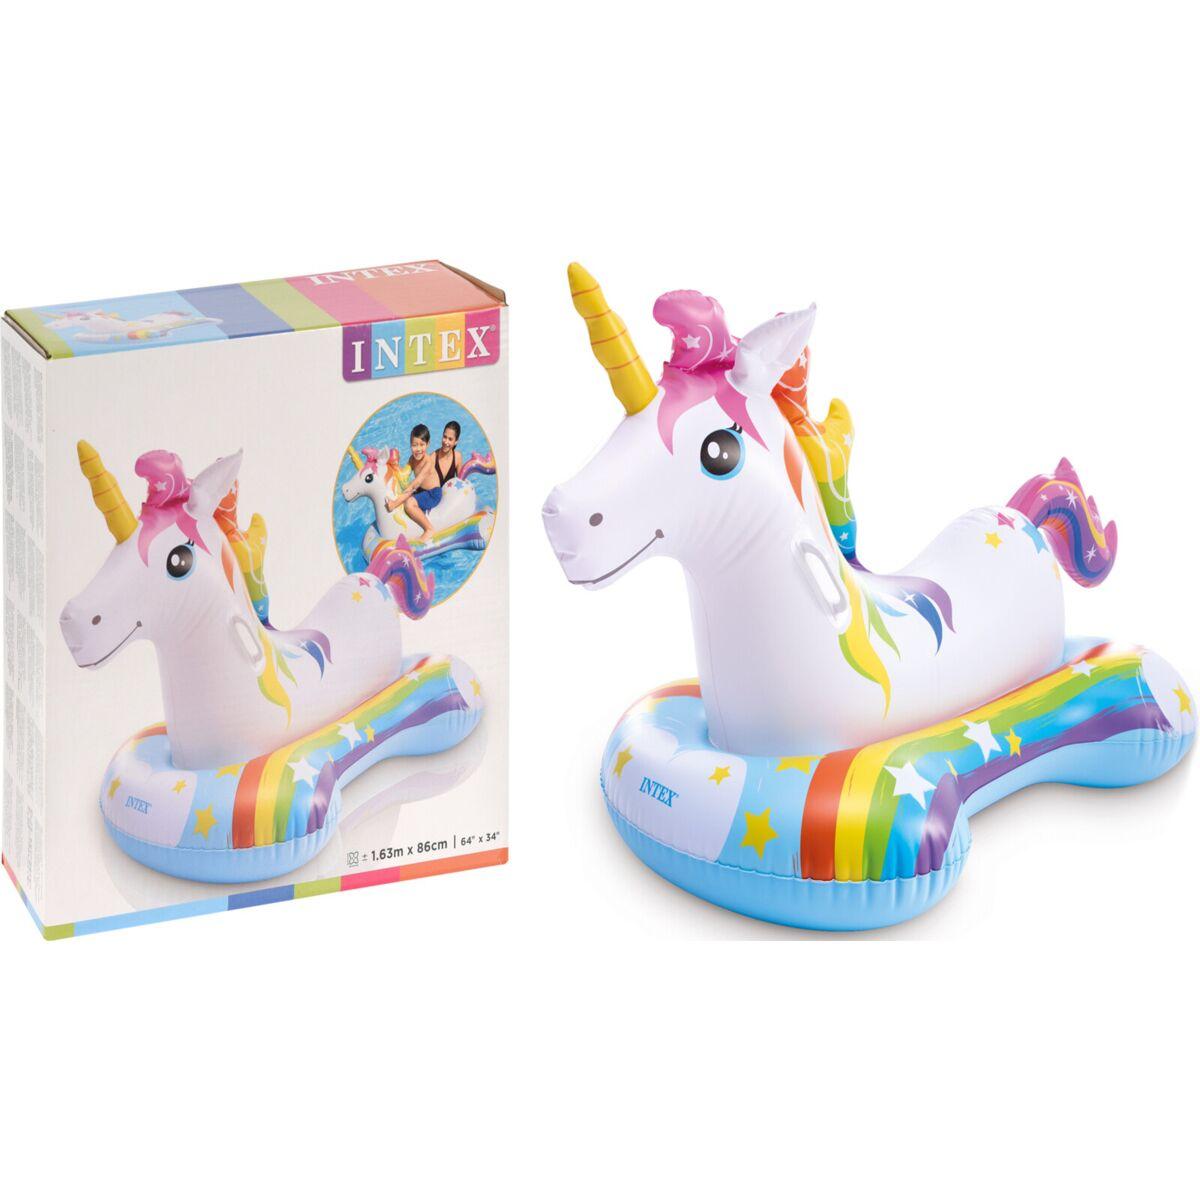 INTEX: Надувная игрушка для катания верхом "Magical Unicorn", 163 х 86 см.